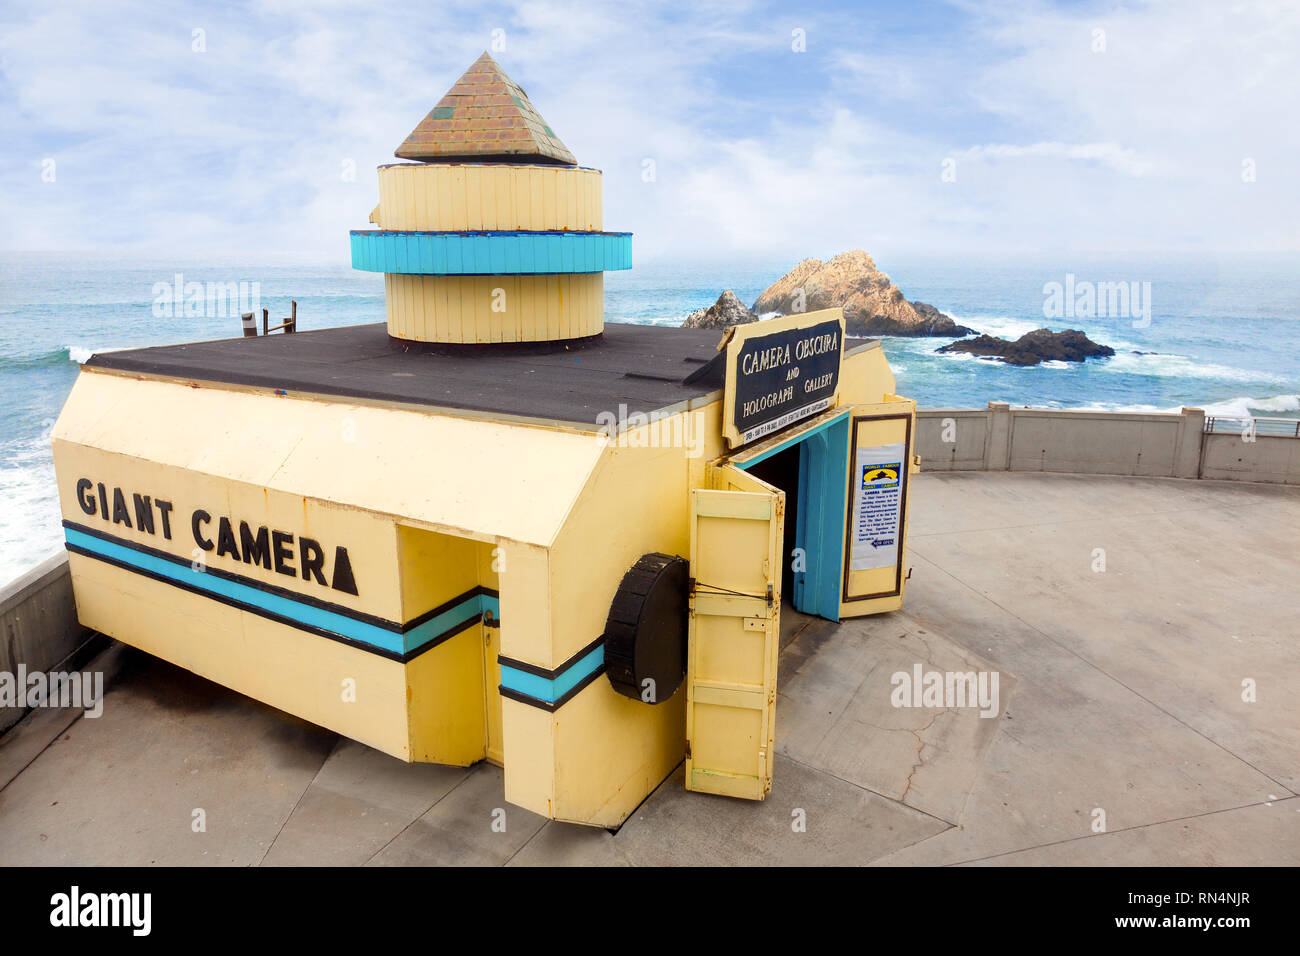 SAN FRANCISCO - La cámara gigante con vistas al mar en la playa. Una atracción turística desde 1946, en el Registro Nacional de Lugares Históricos. Foto de stock